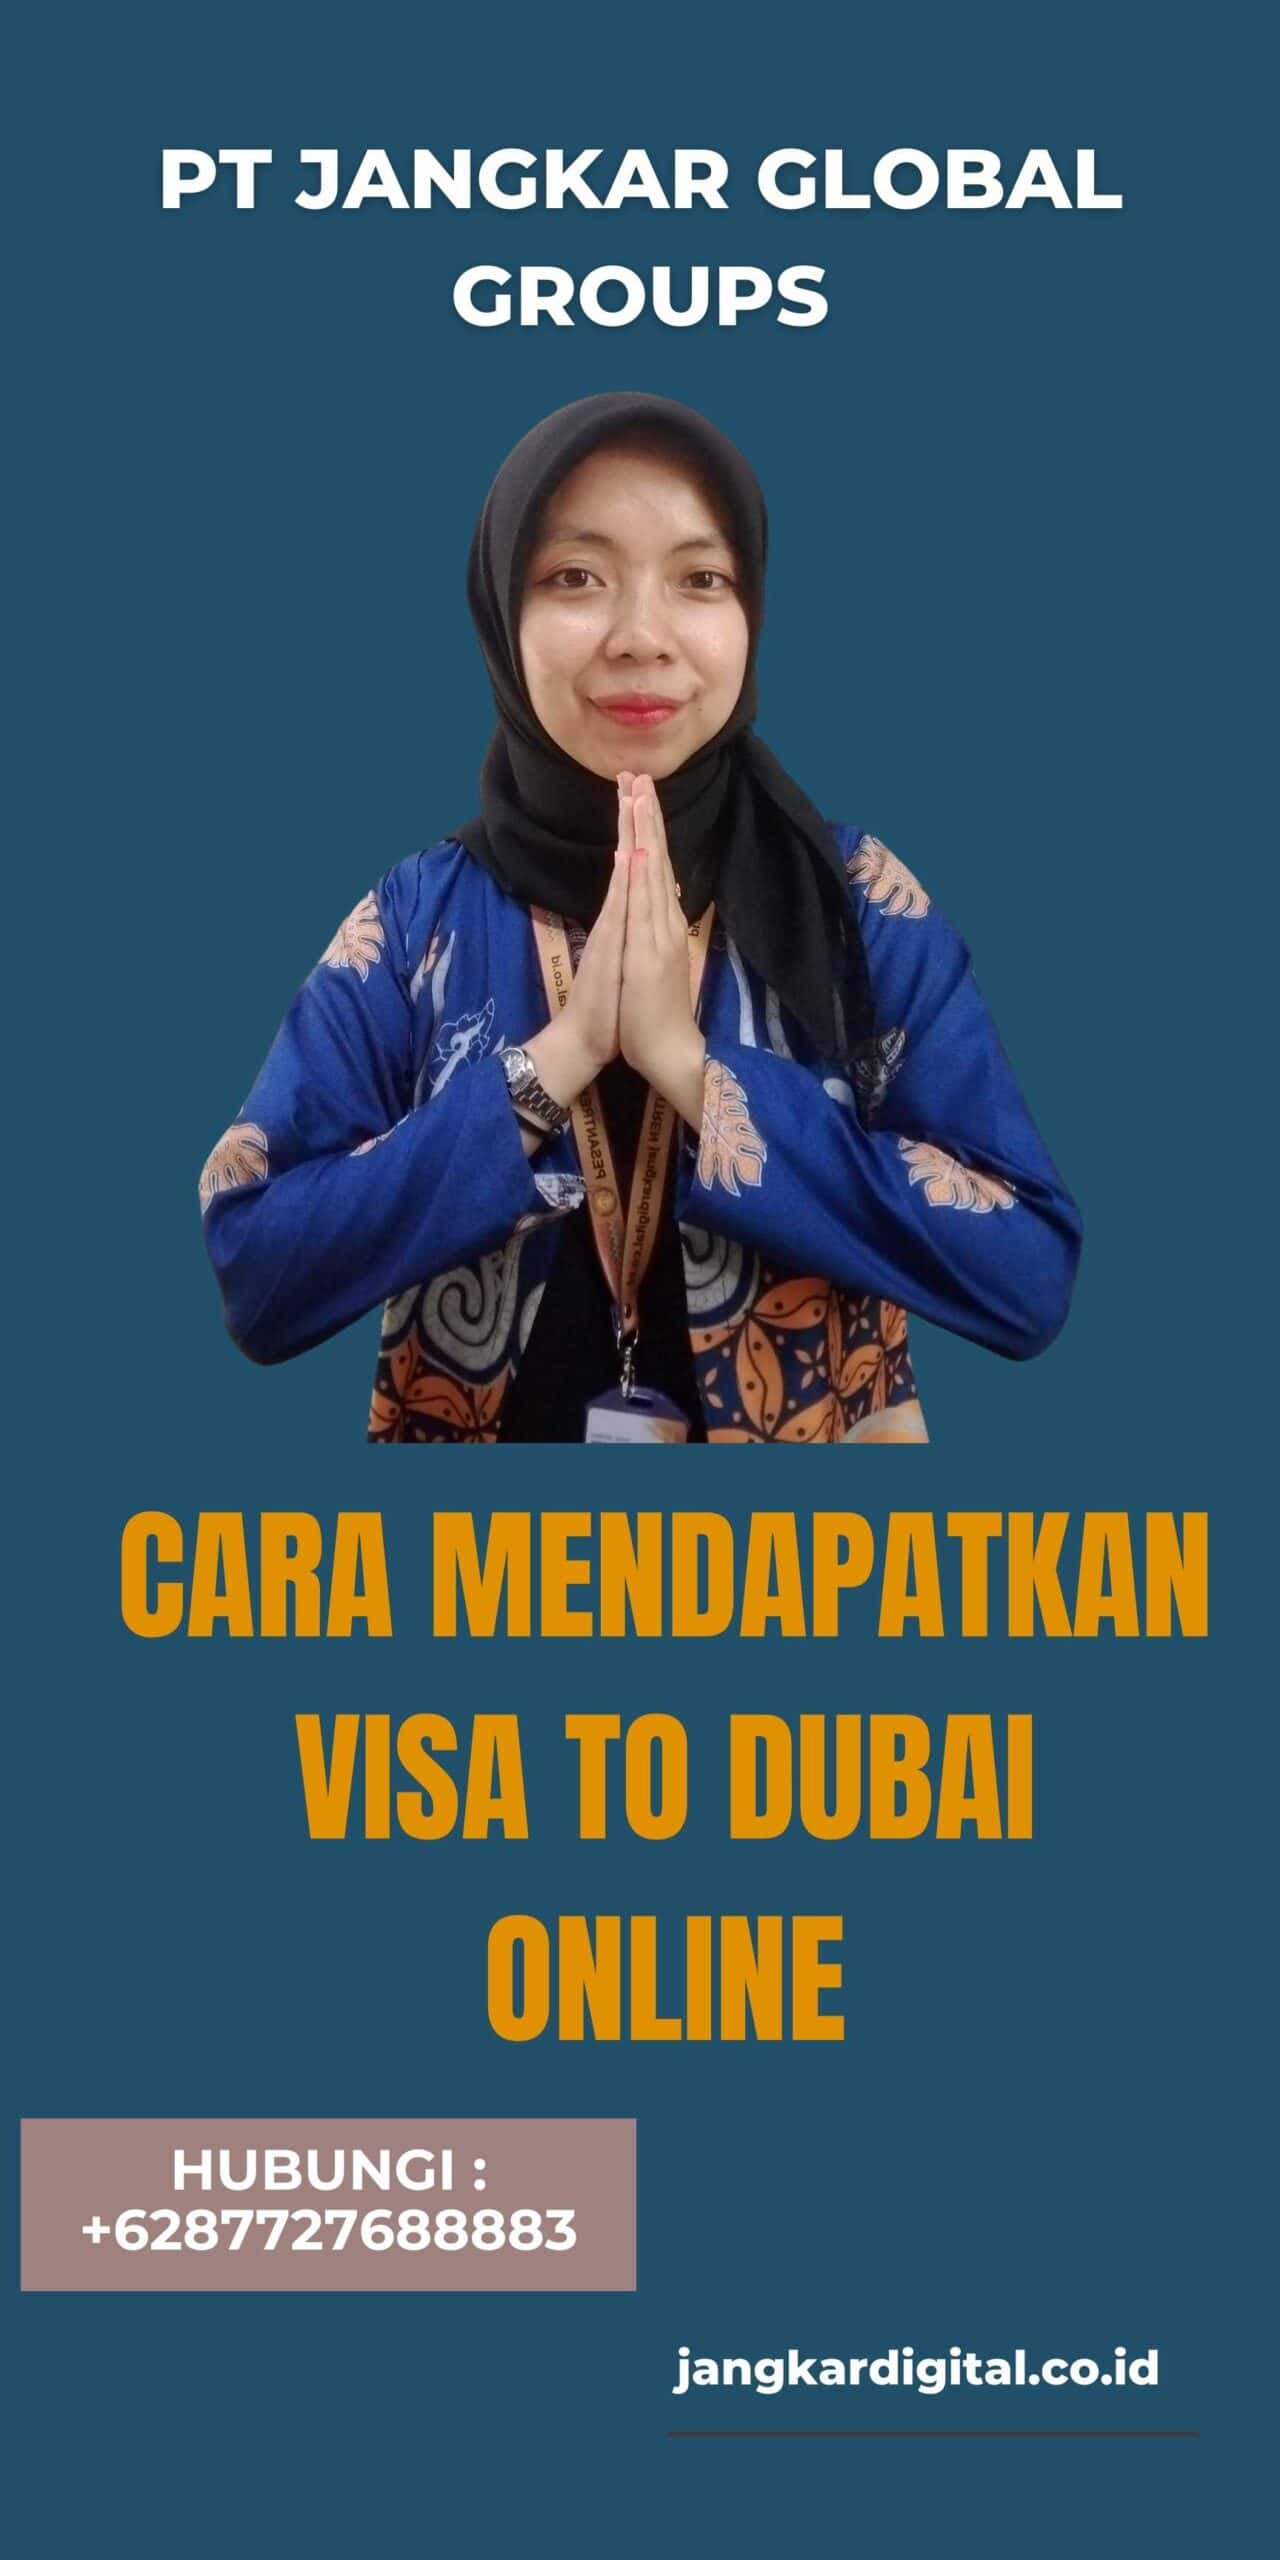 Cara Mendapatkan Visa to Dubai Online